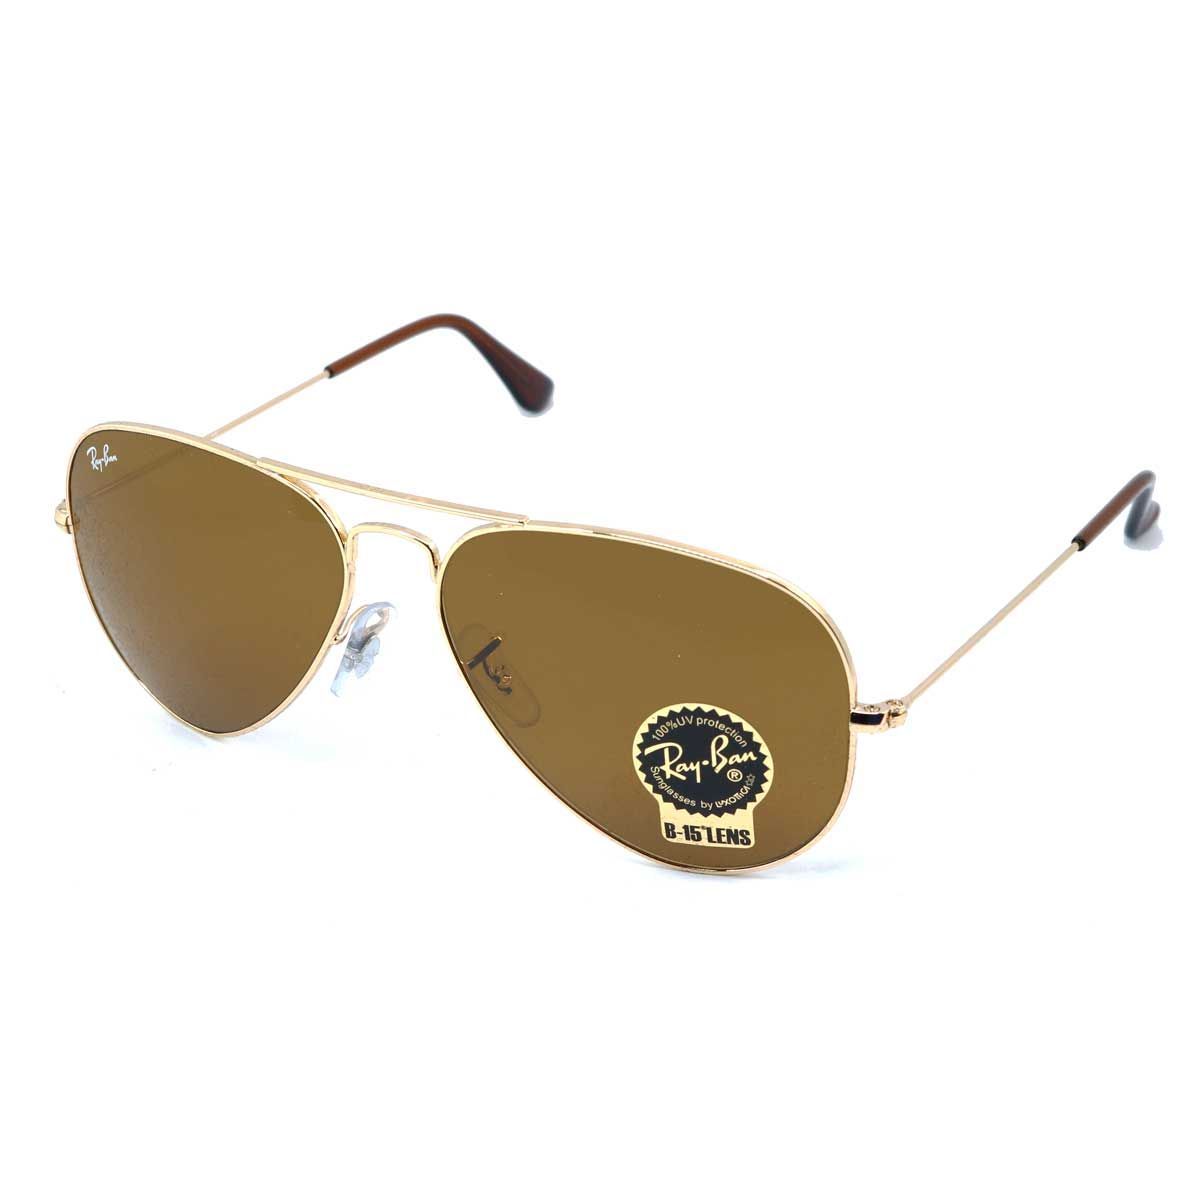 RB3025 Pilot Sunglasses 0001 33 - size 55